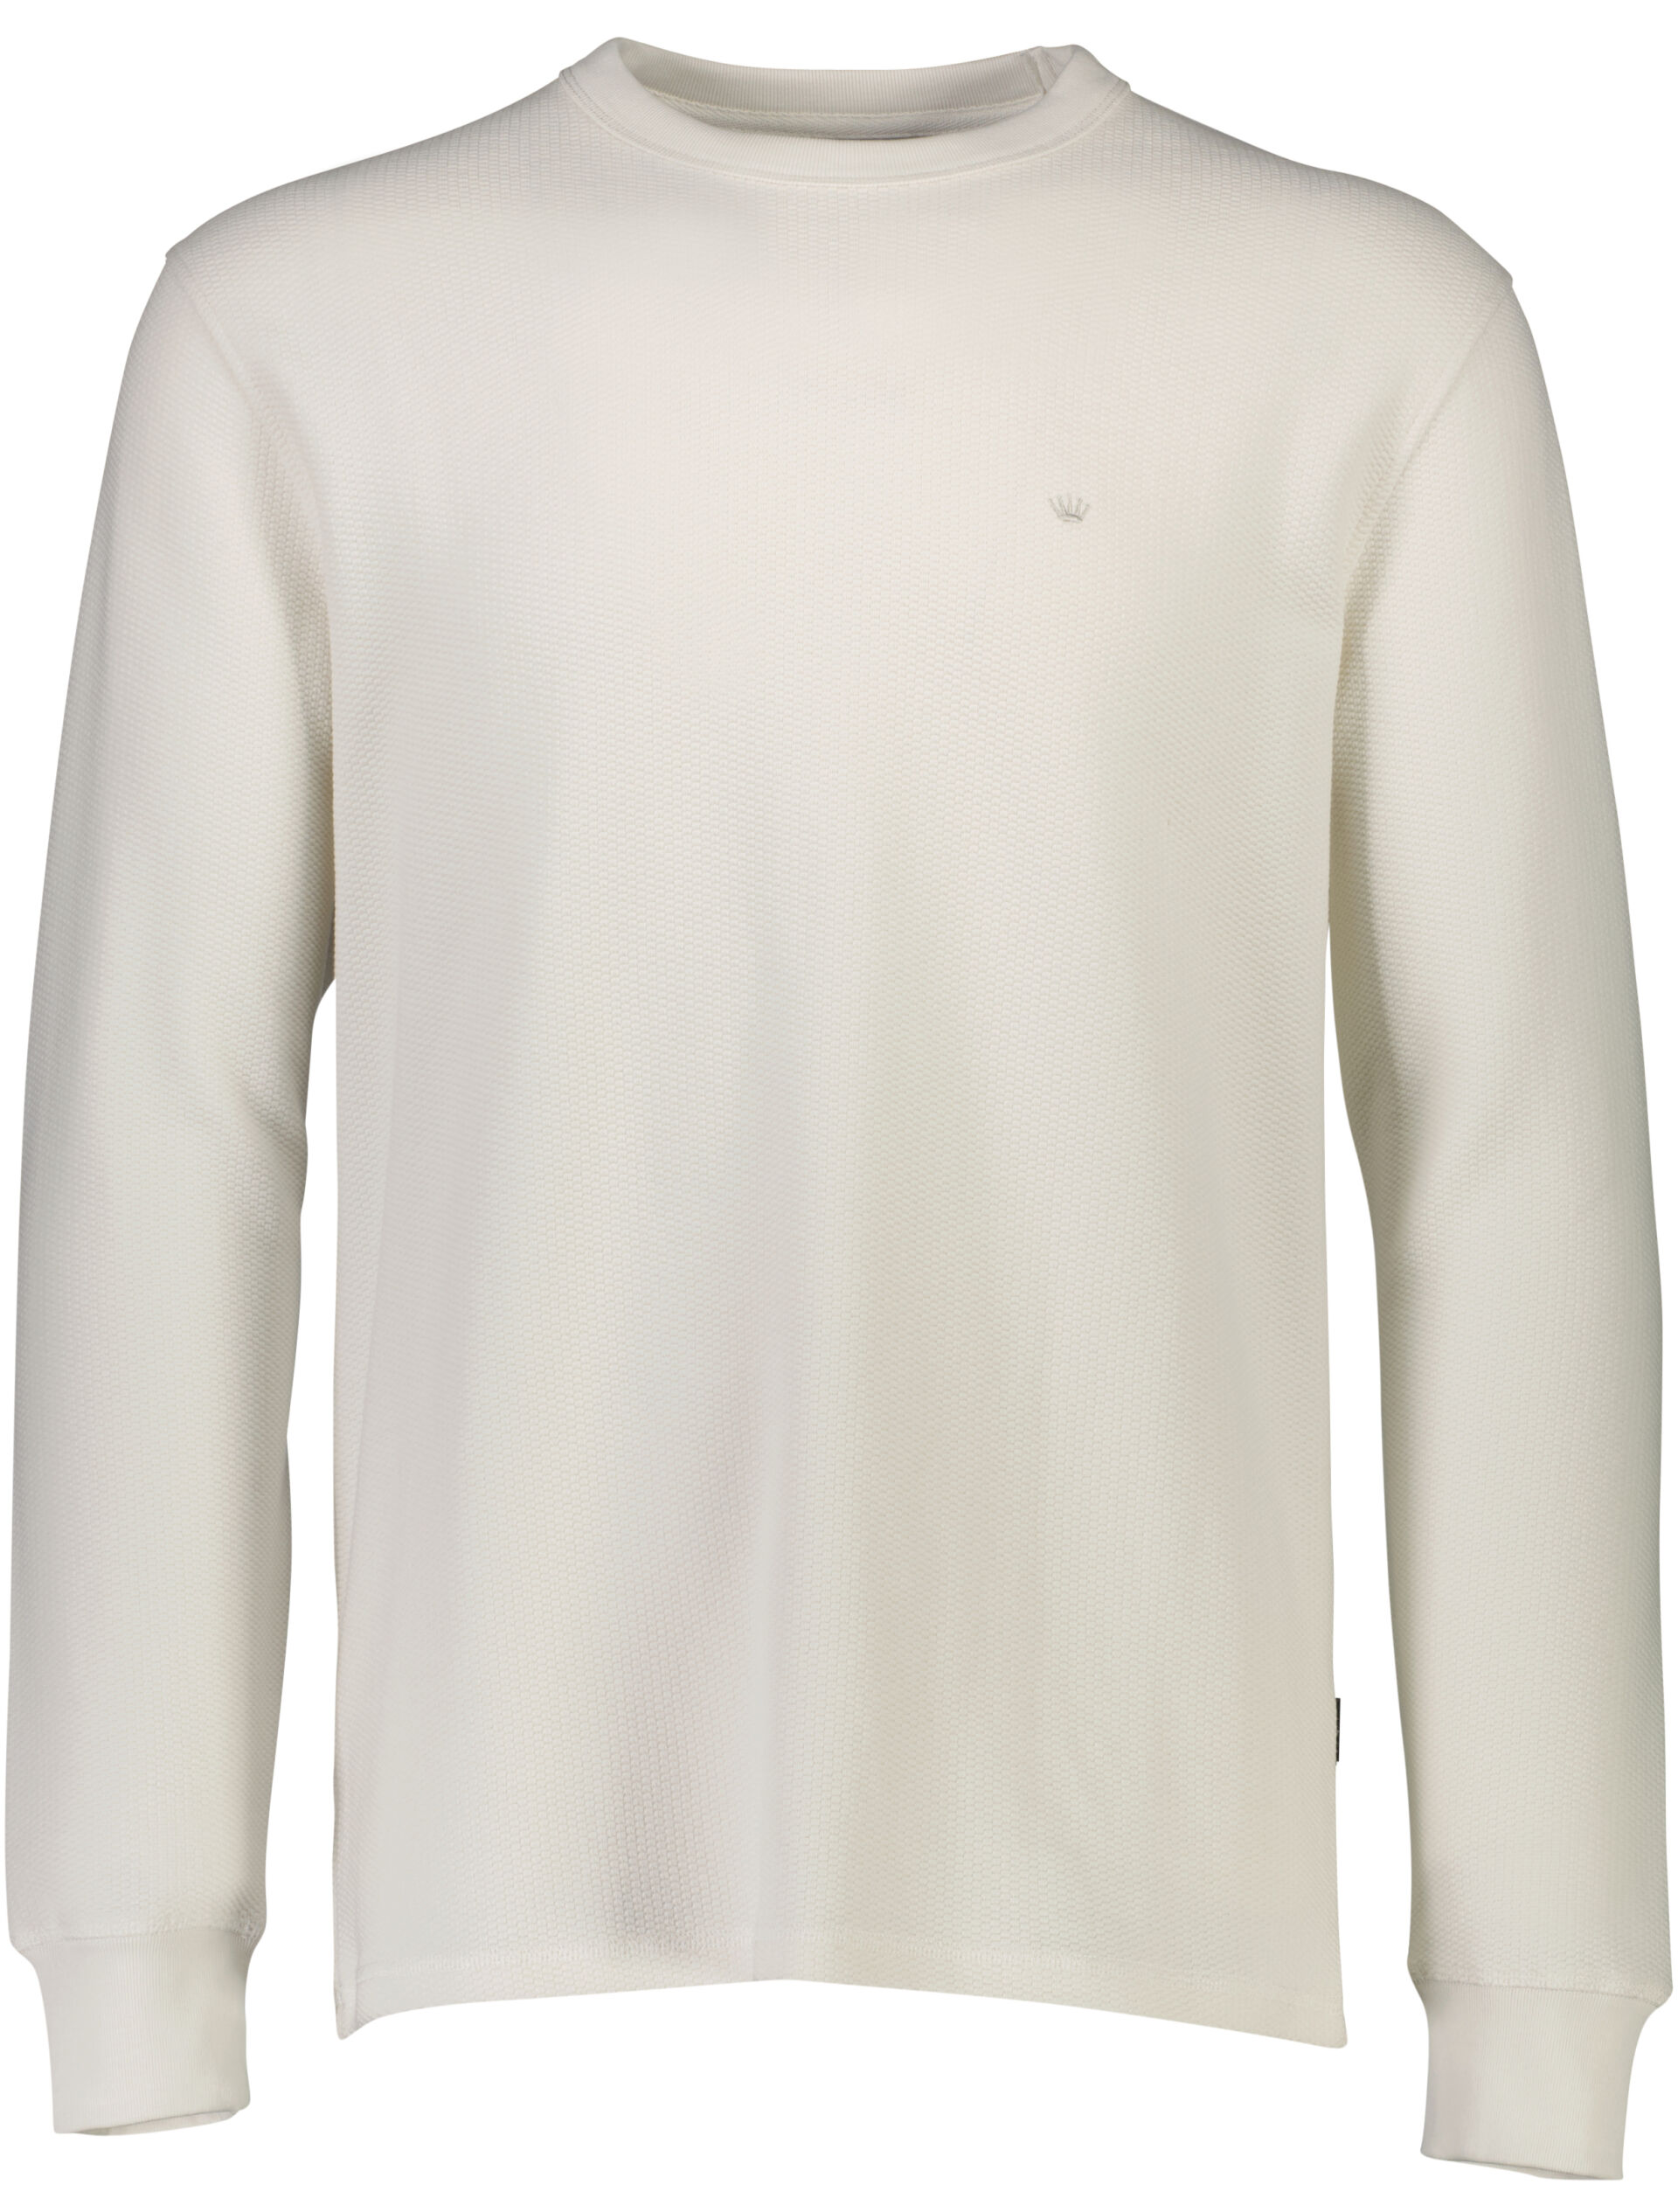 Sweatshirt Sweatshirt White 60-702019